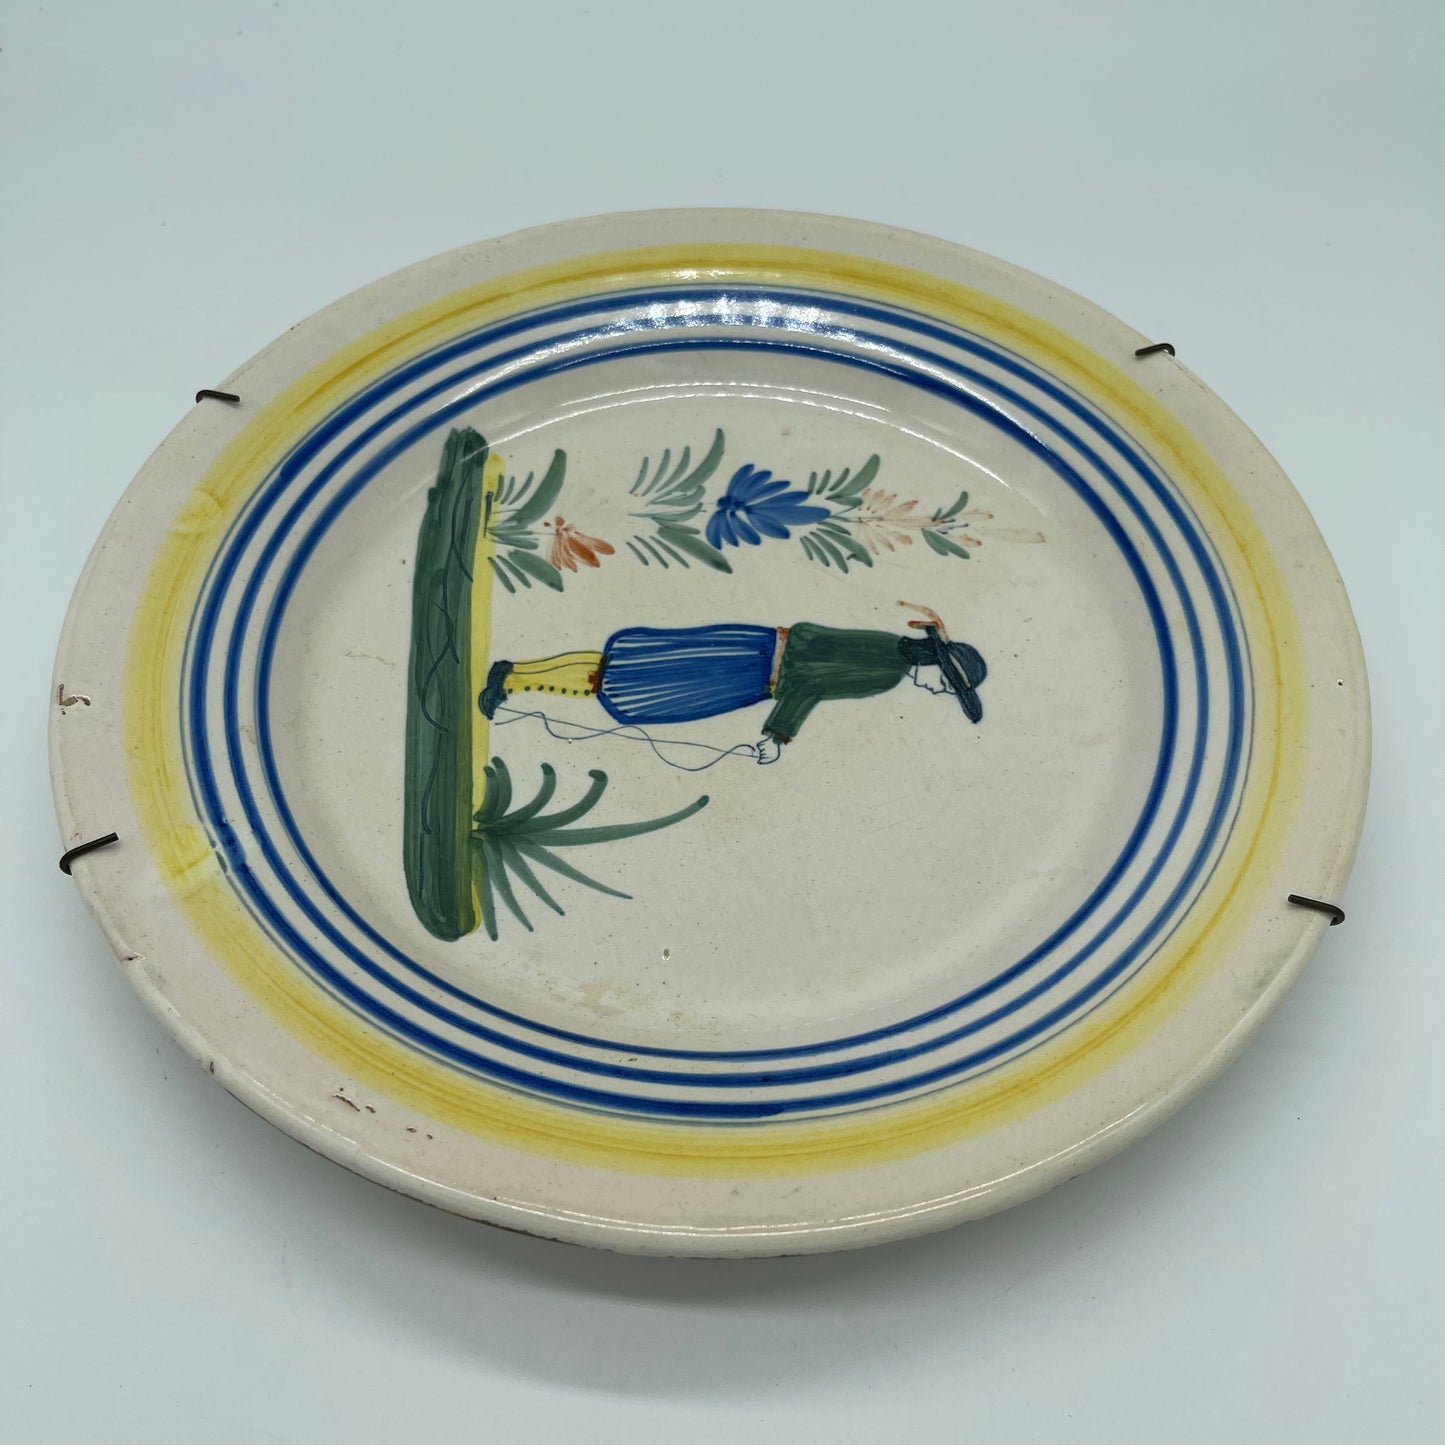 Quimper Plate (Item Number 0072)